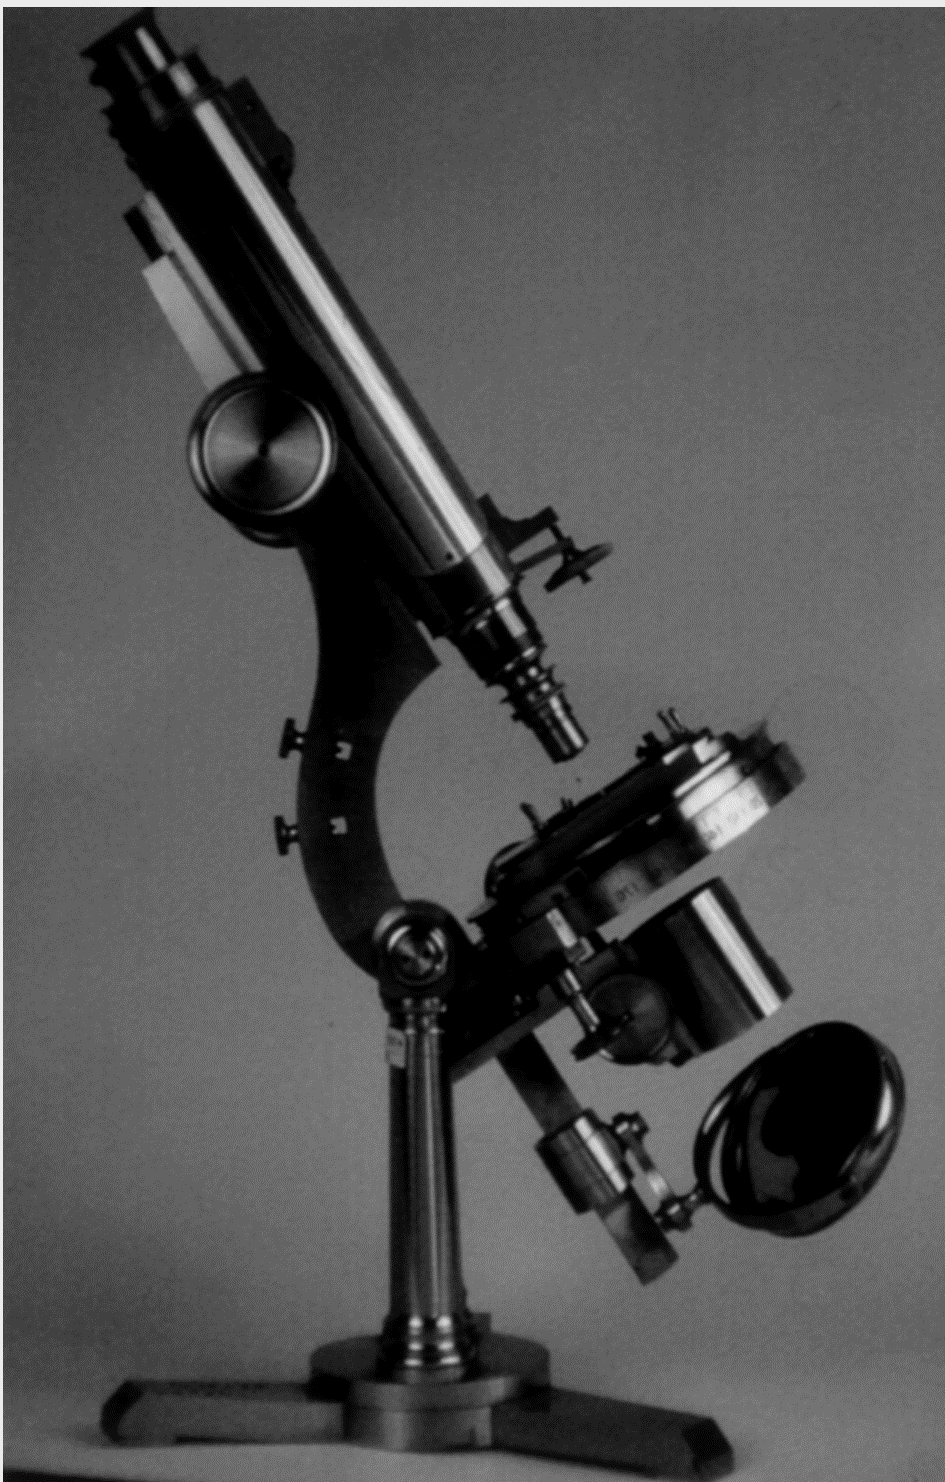 李斯特的显微镜，现存于伦敦的Royal College
of Surgeons